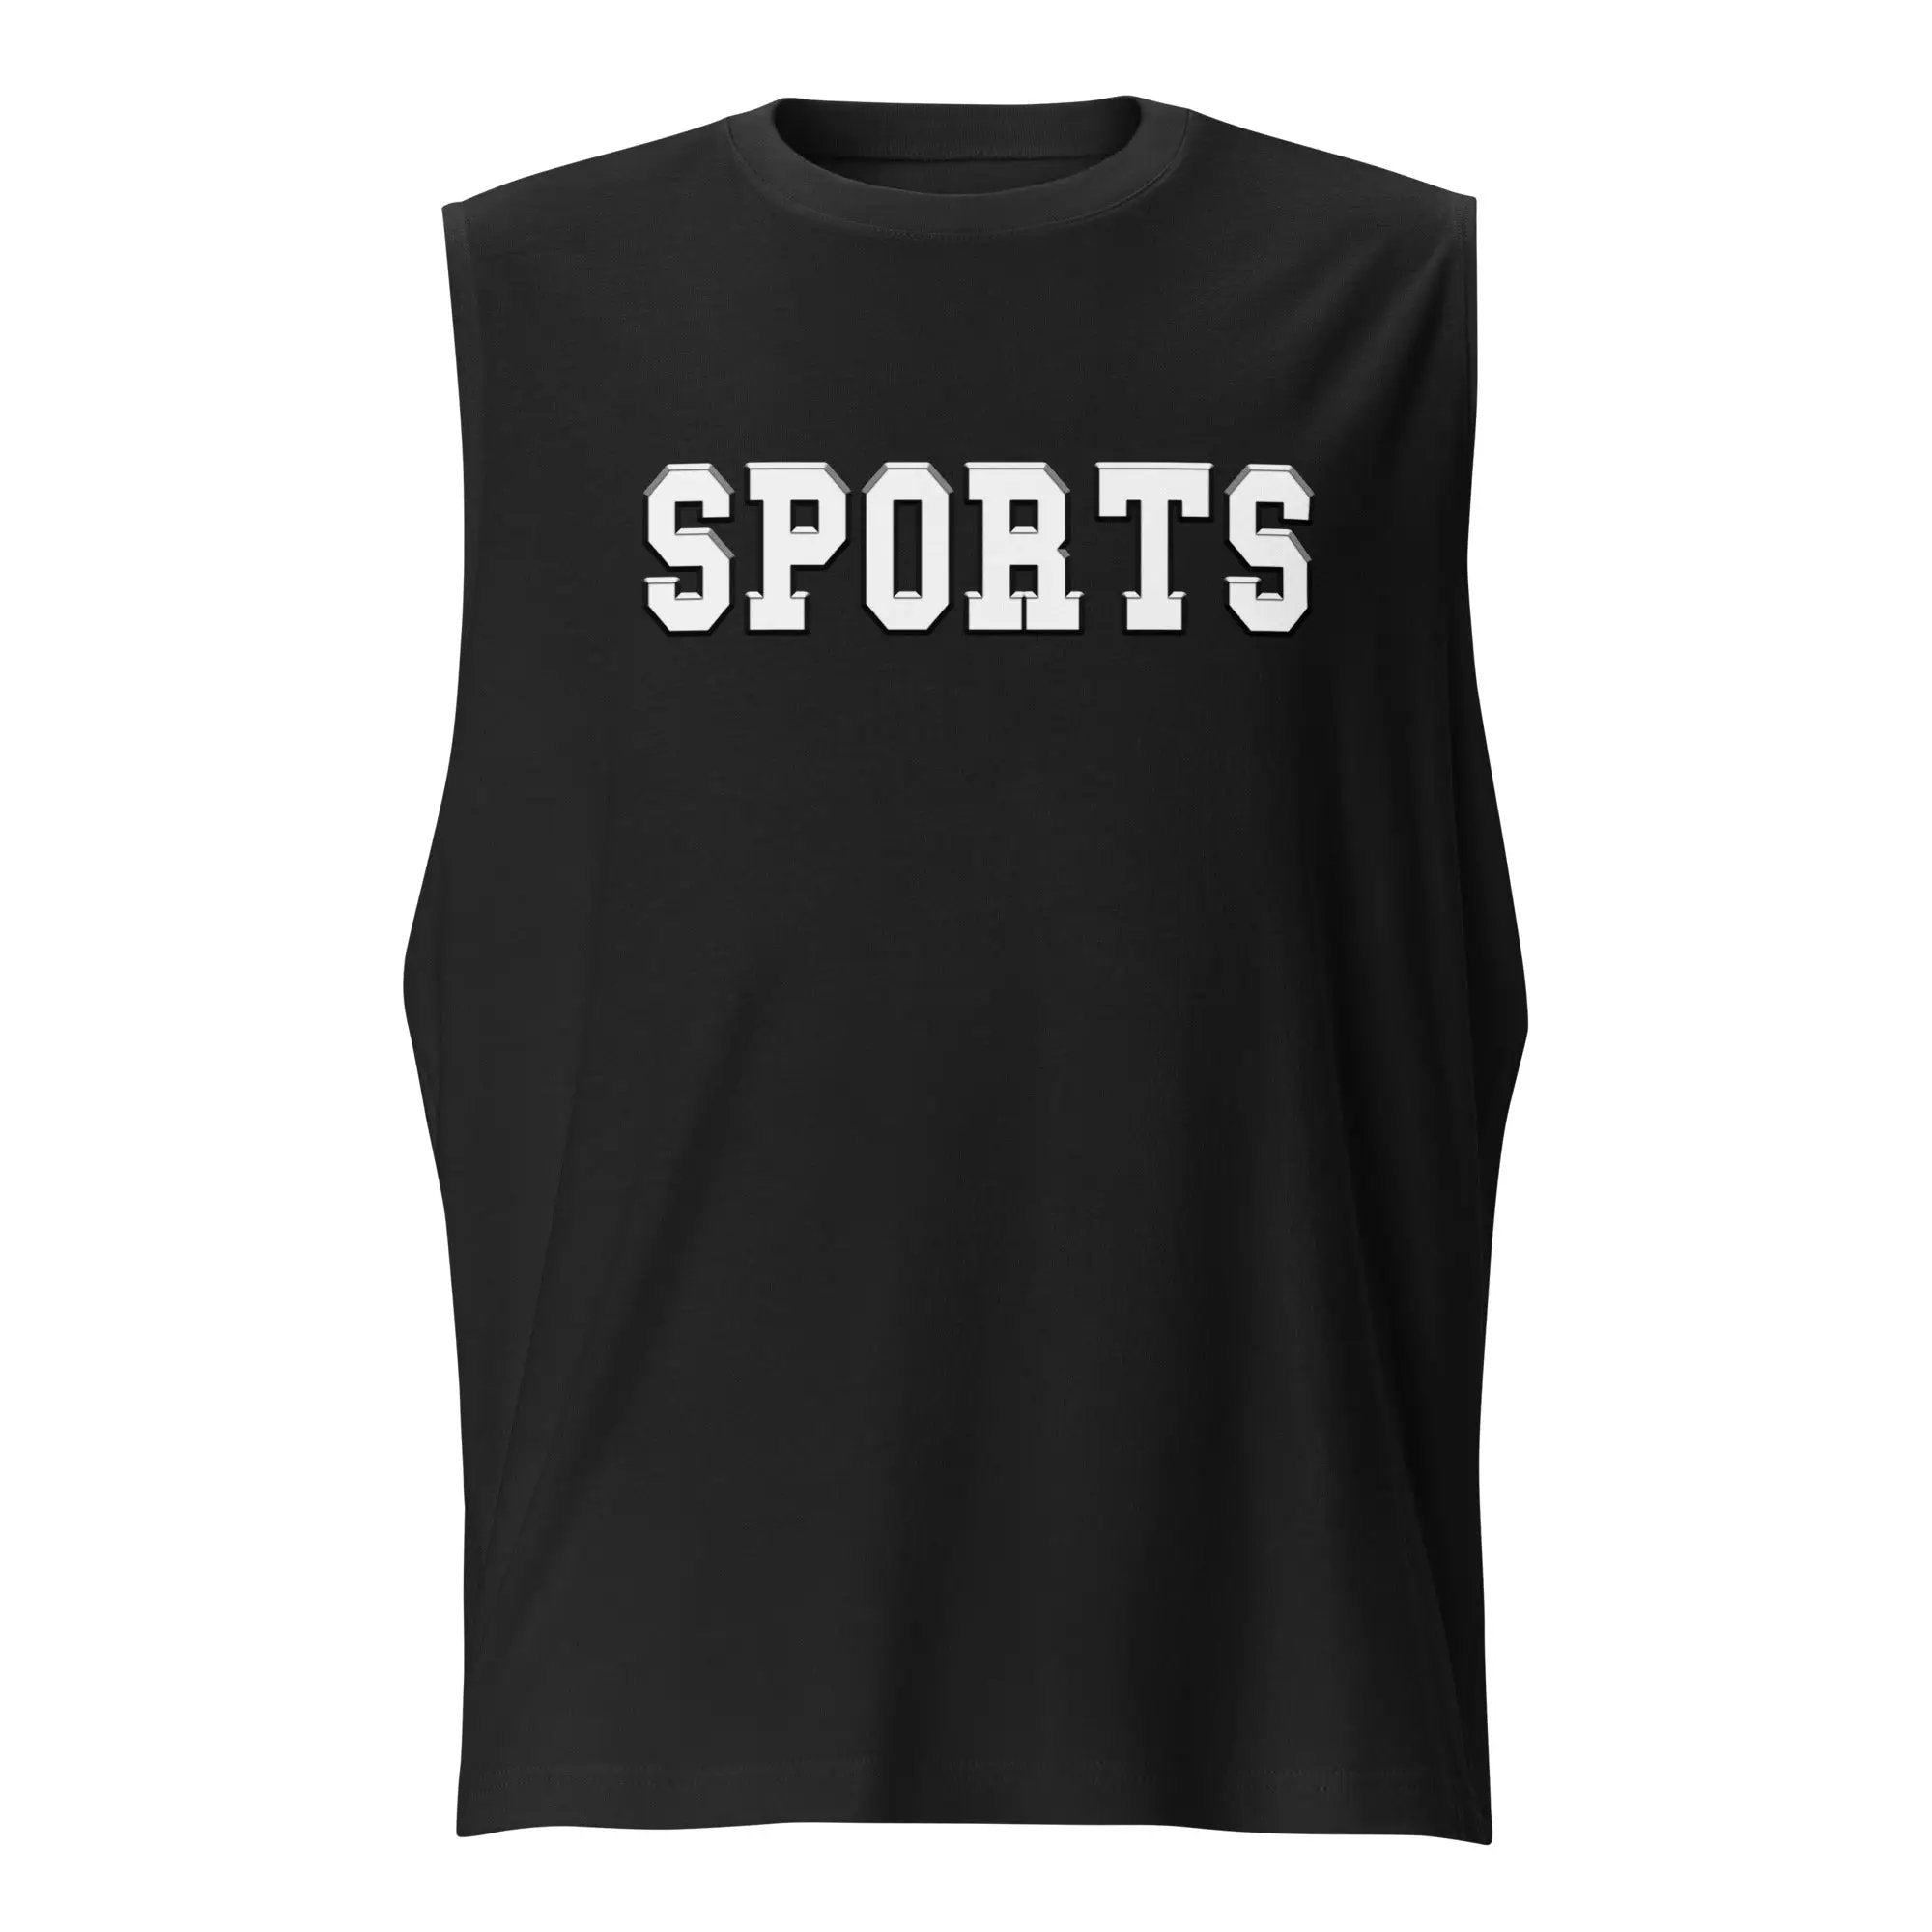 SPORTS! Muscle Shirt